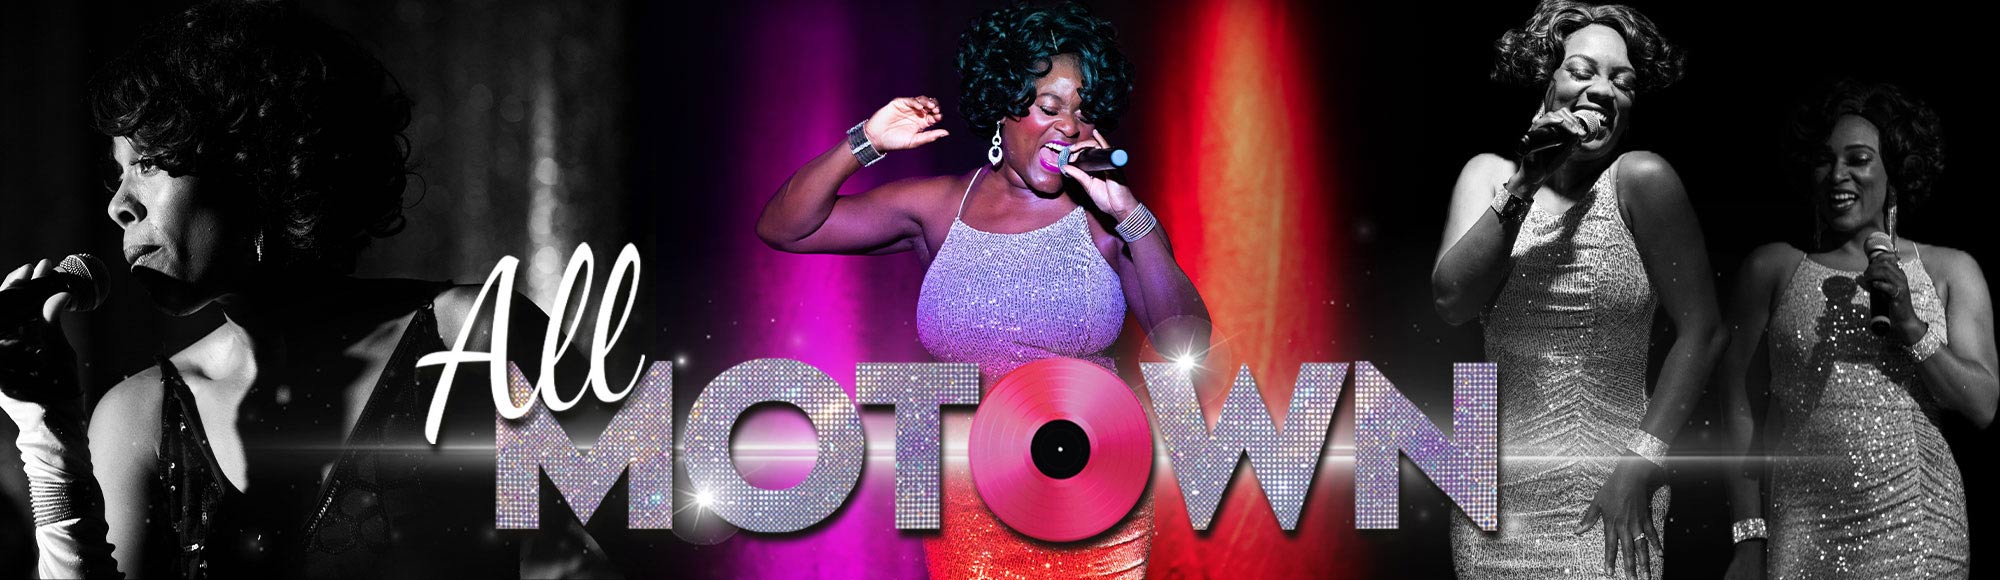 All Motown Show Las Vegas: Tickets & Reviews | Vegas.com